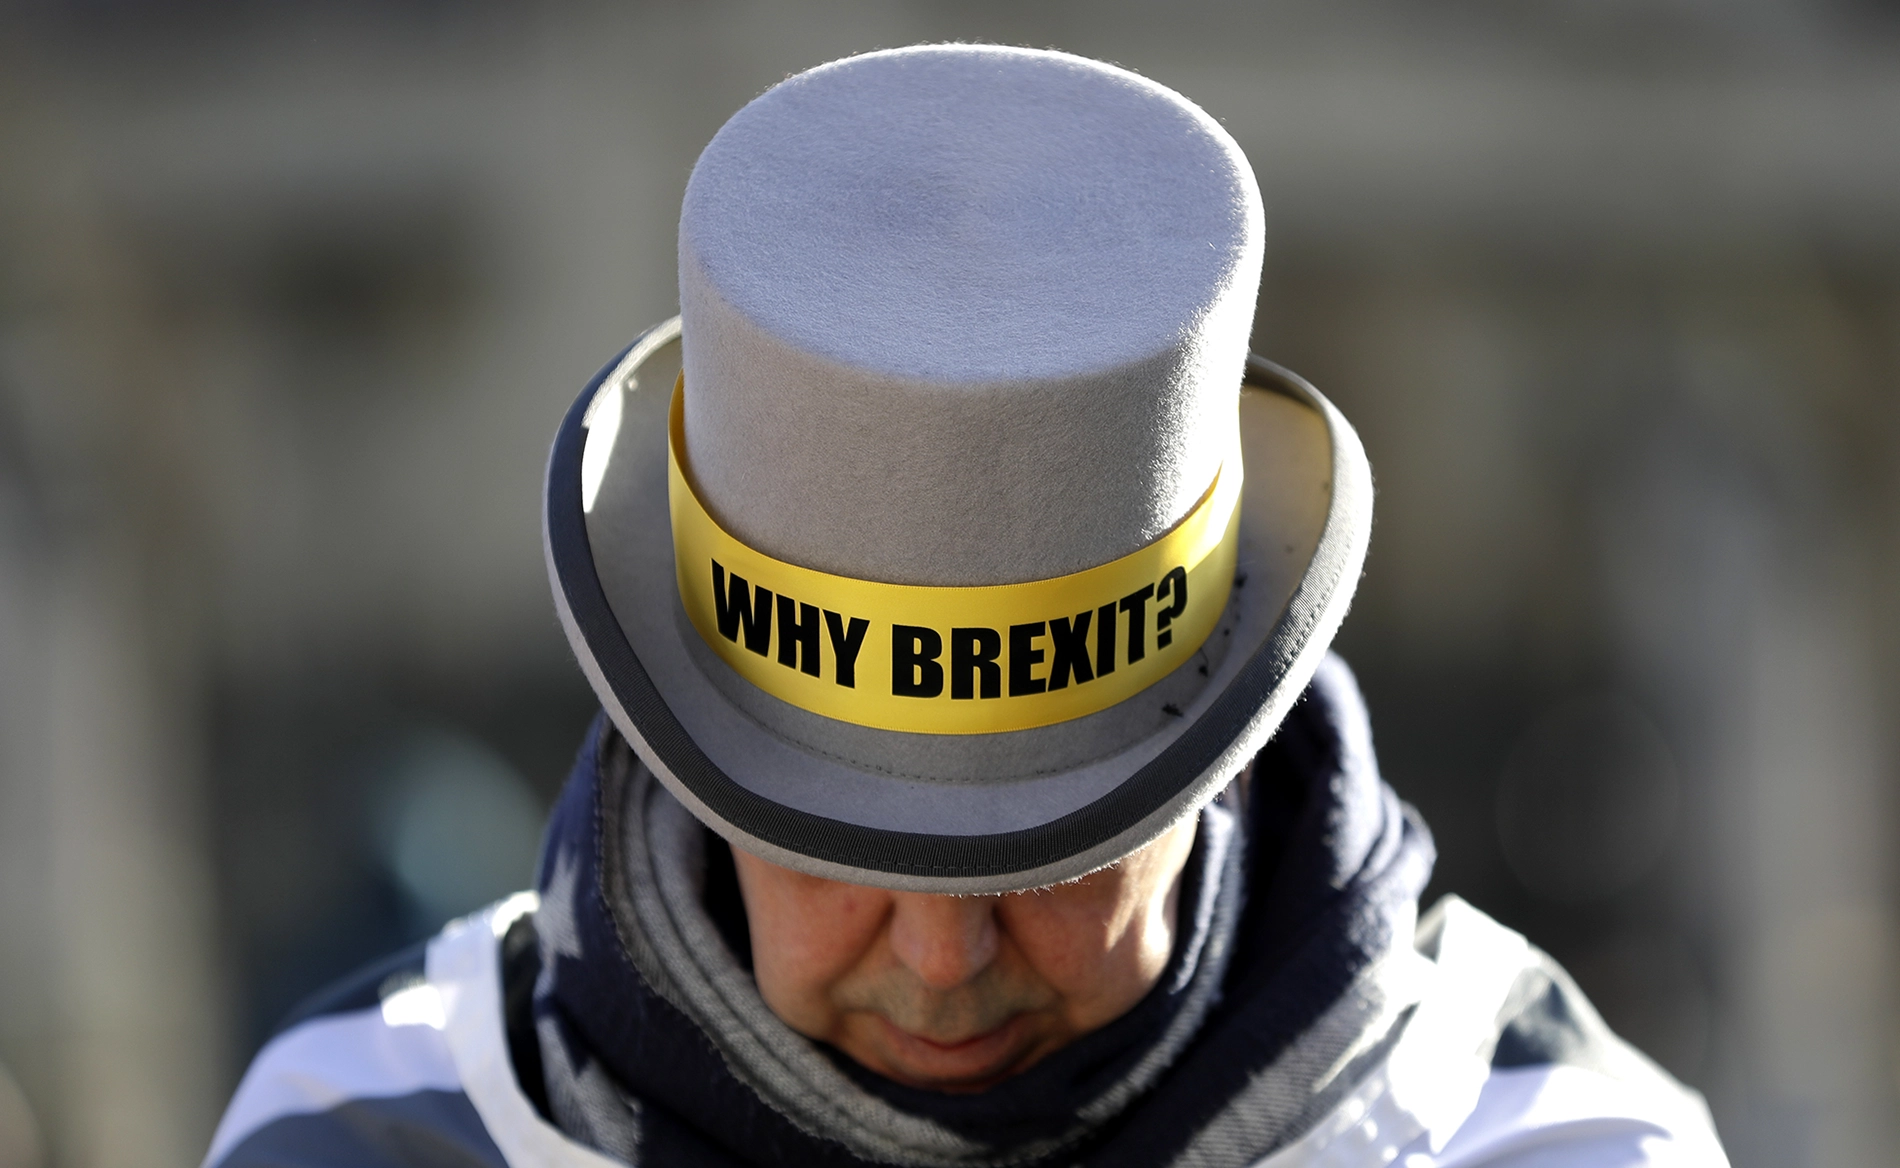 Mann mit Hut mit der Aufschrift "Why Brexit?", Picture-Alliance / ASSOCIATED PRESS | Kirsty Wigglesworth